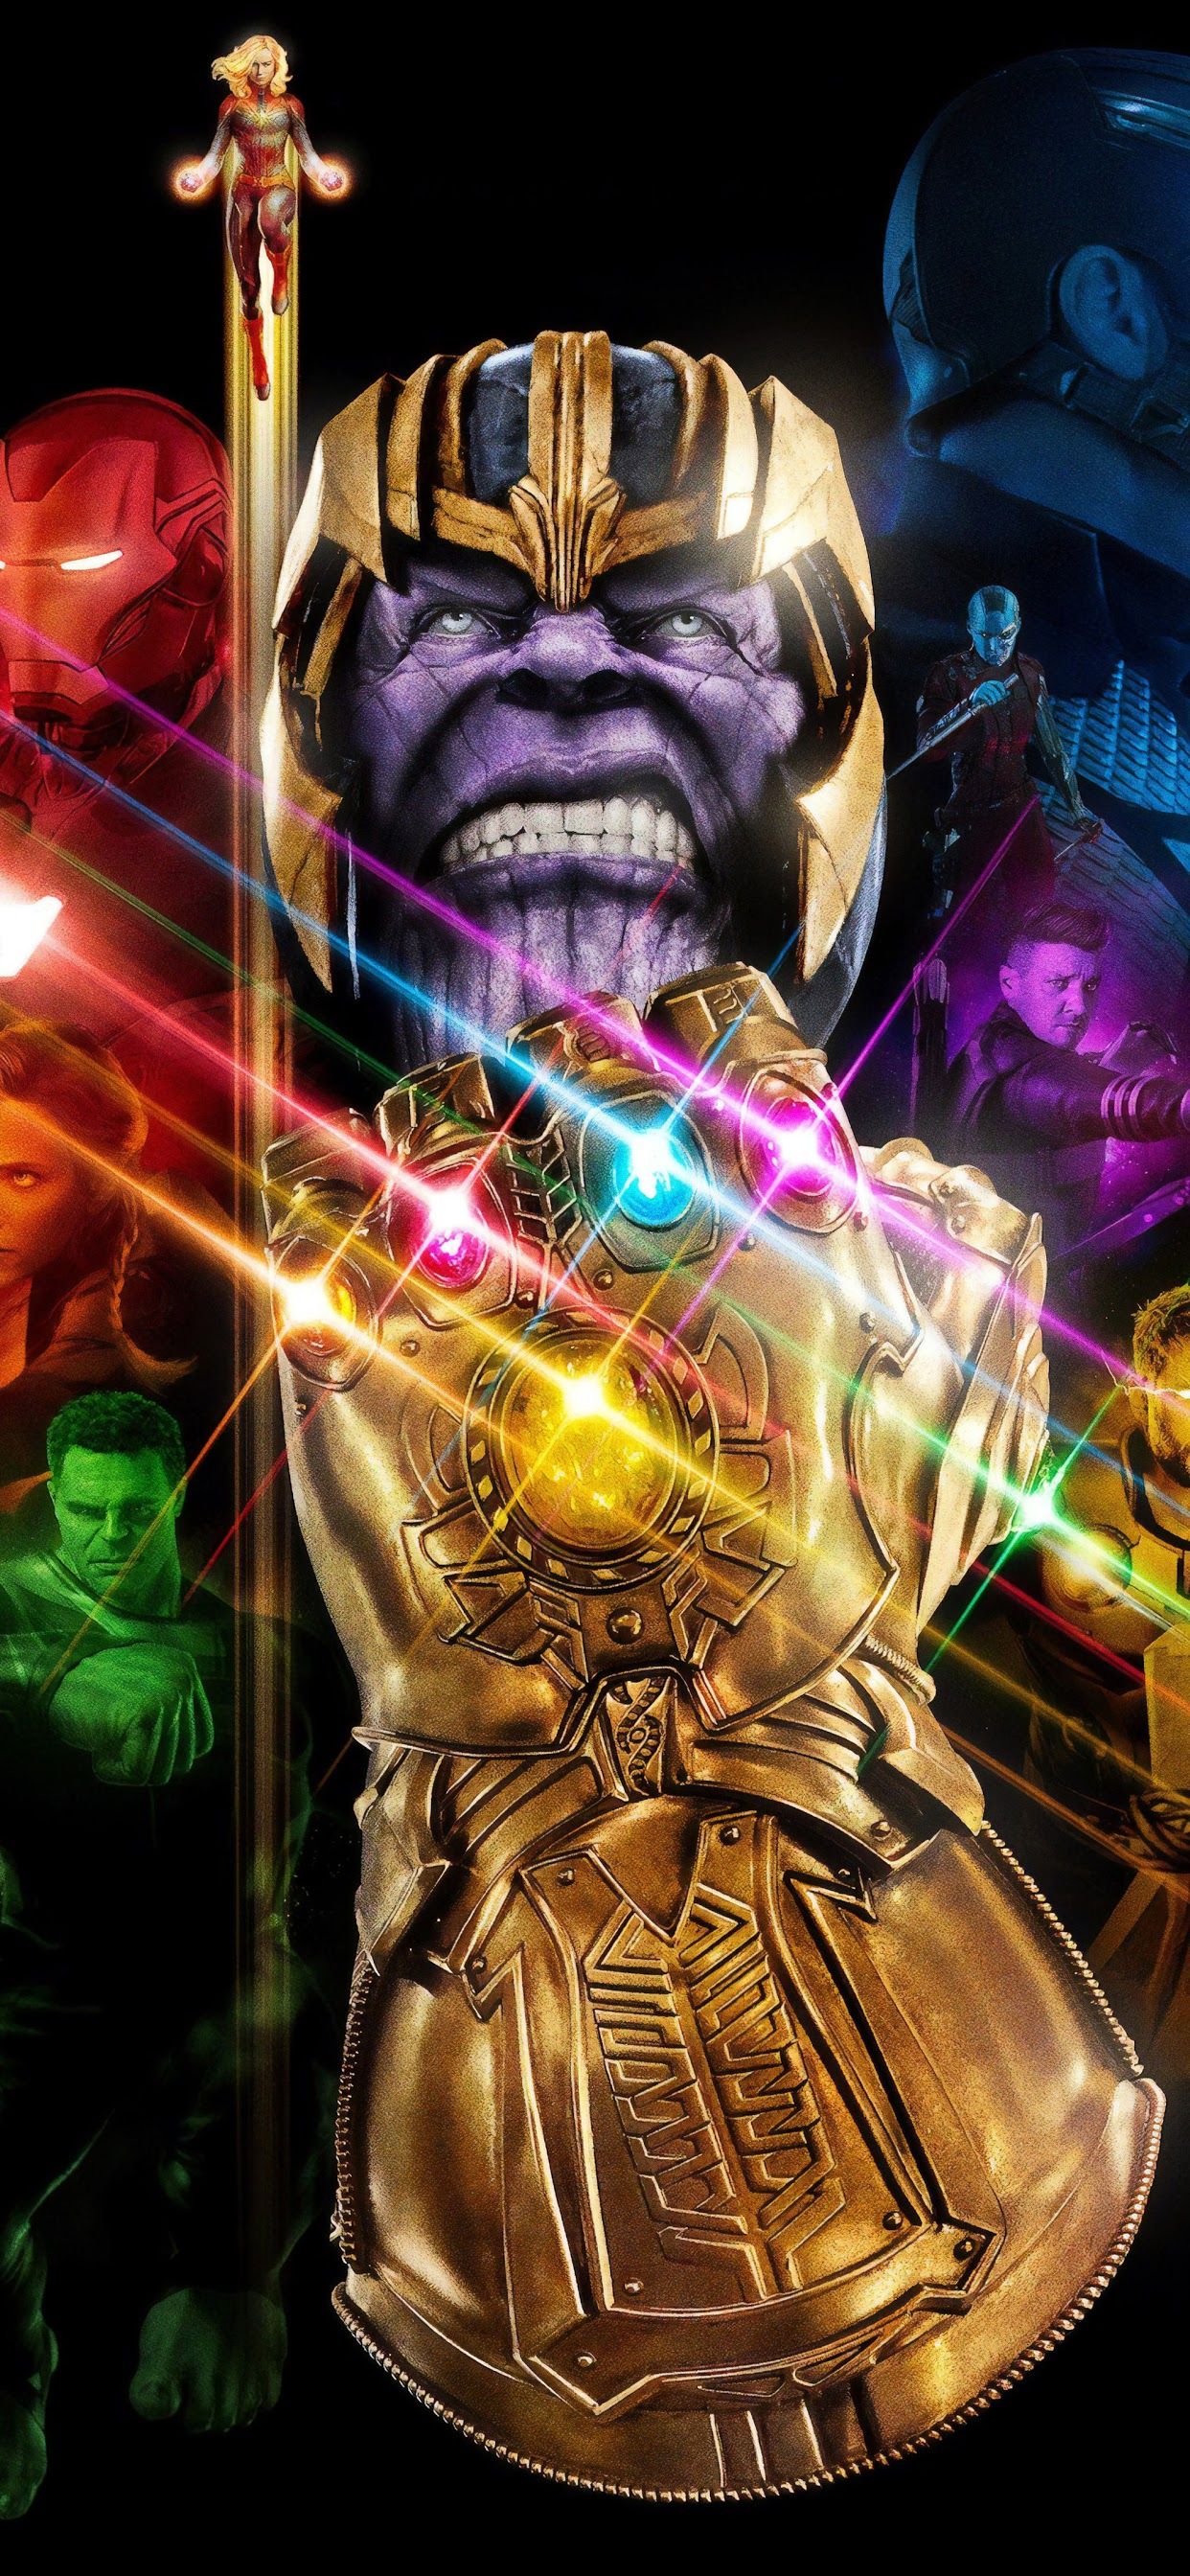 Avengers: Endgame Thanos Infinity Gauntlet 4K Wallpaper